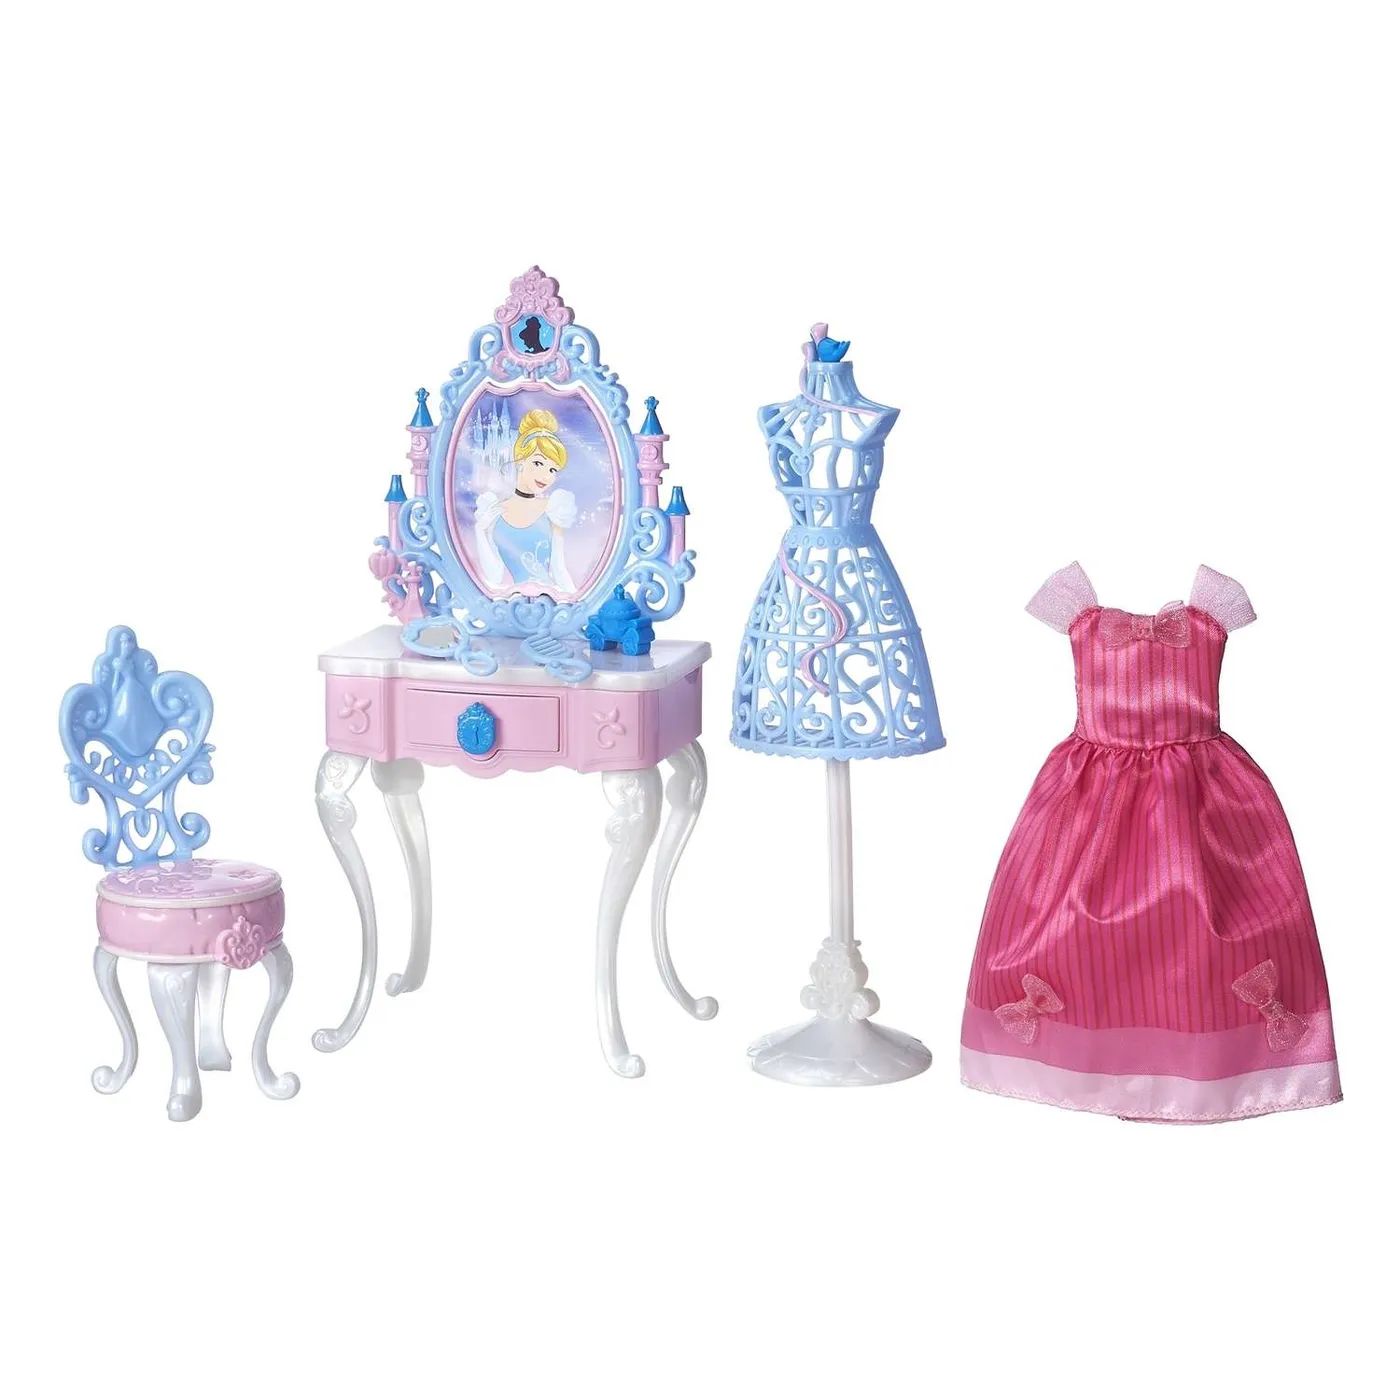 Набор принцессы Princess b5310. Набор Hasbro Disney Princess. Туалетный столик Smoby принцессы Диснея. Набор игровой Disney Princess Hasbro Золушка f13865l0.